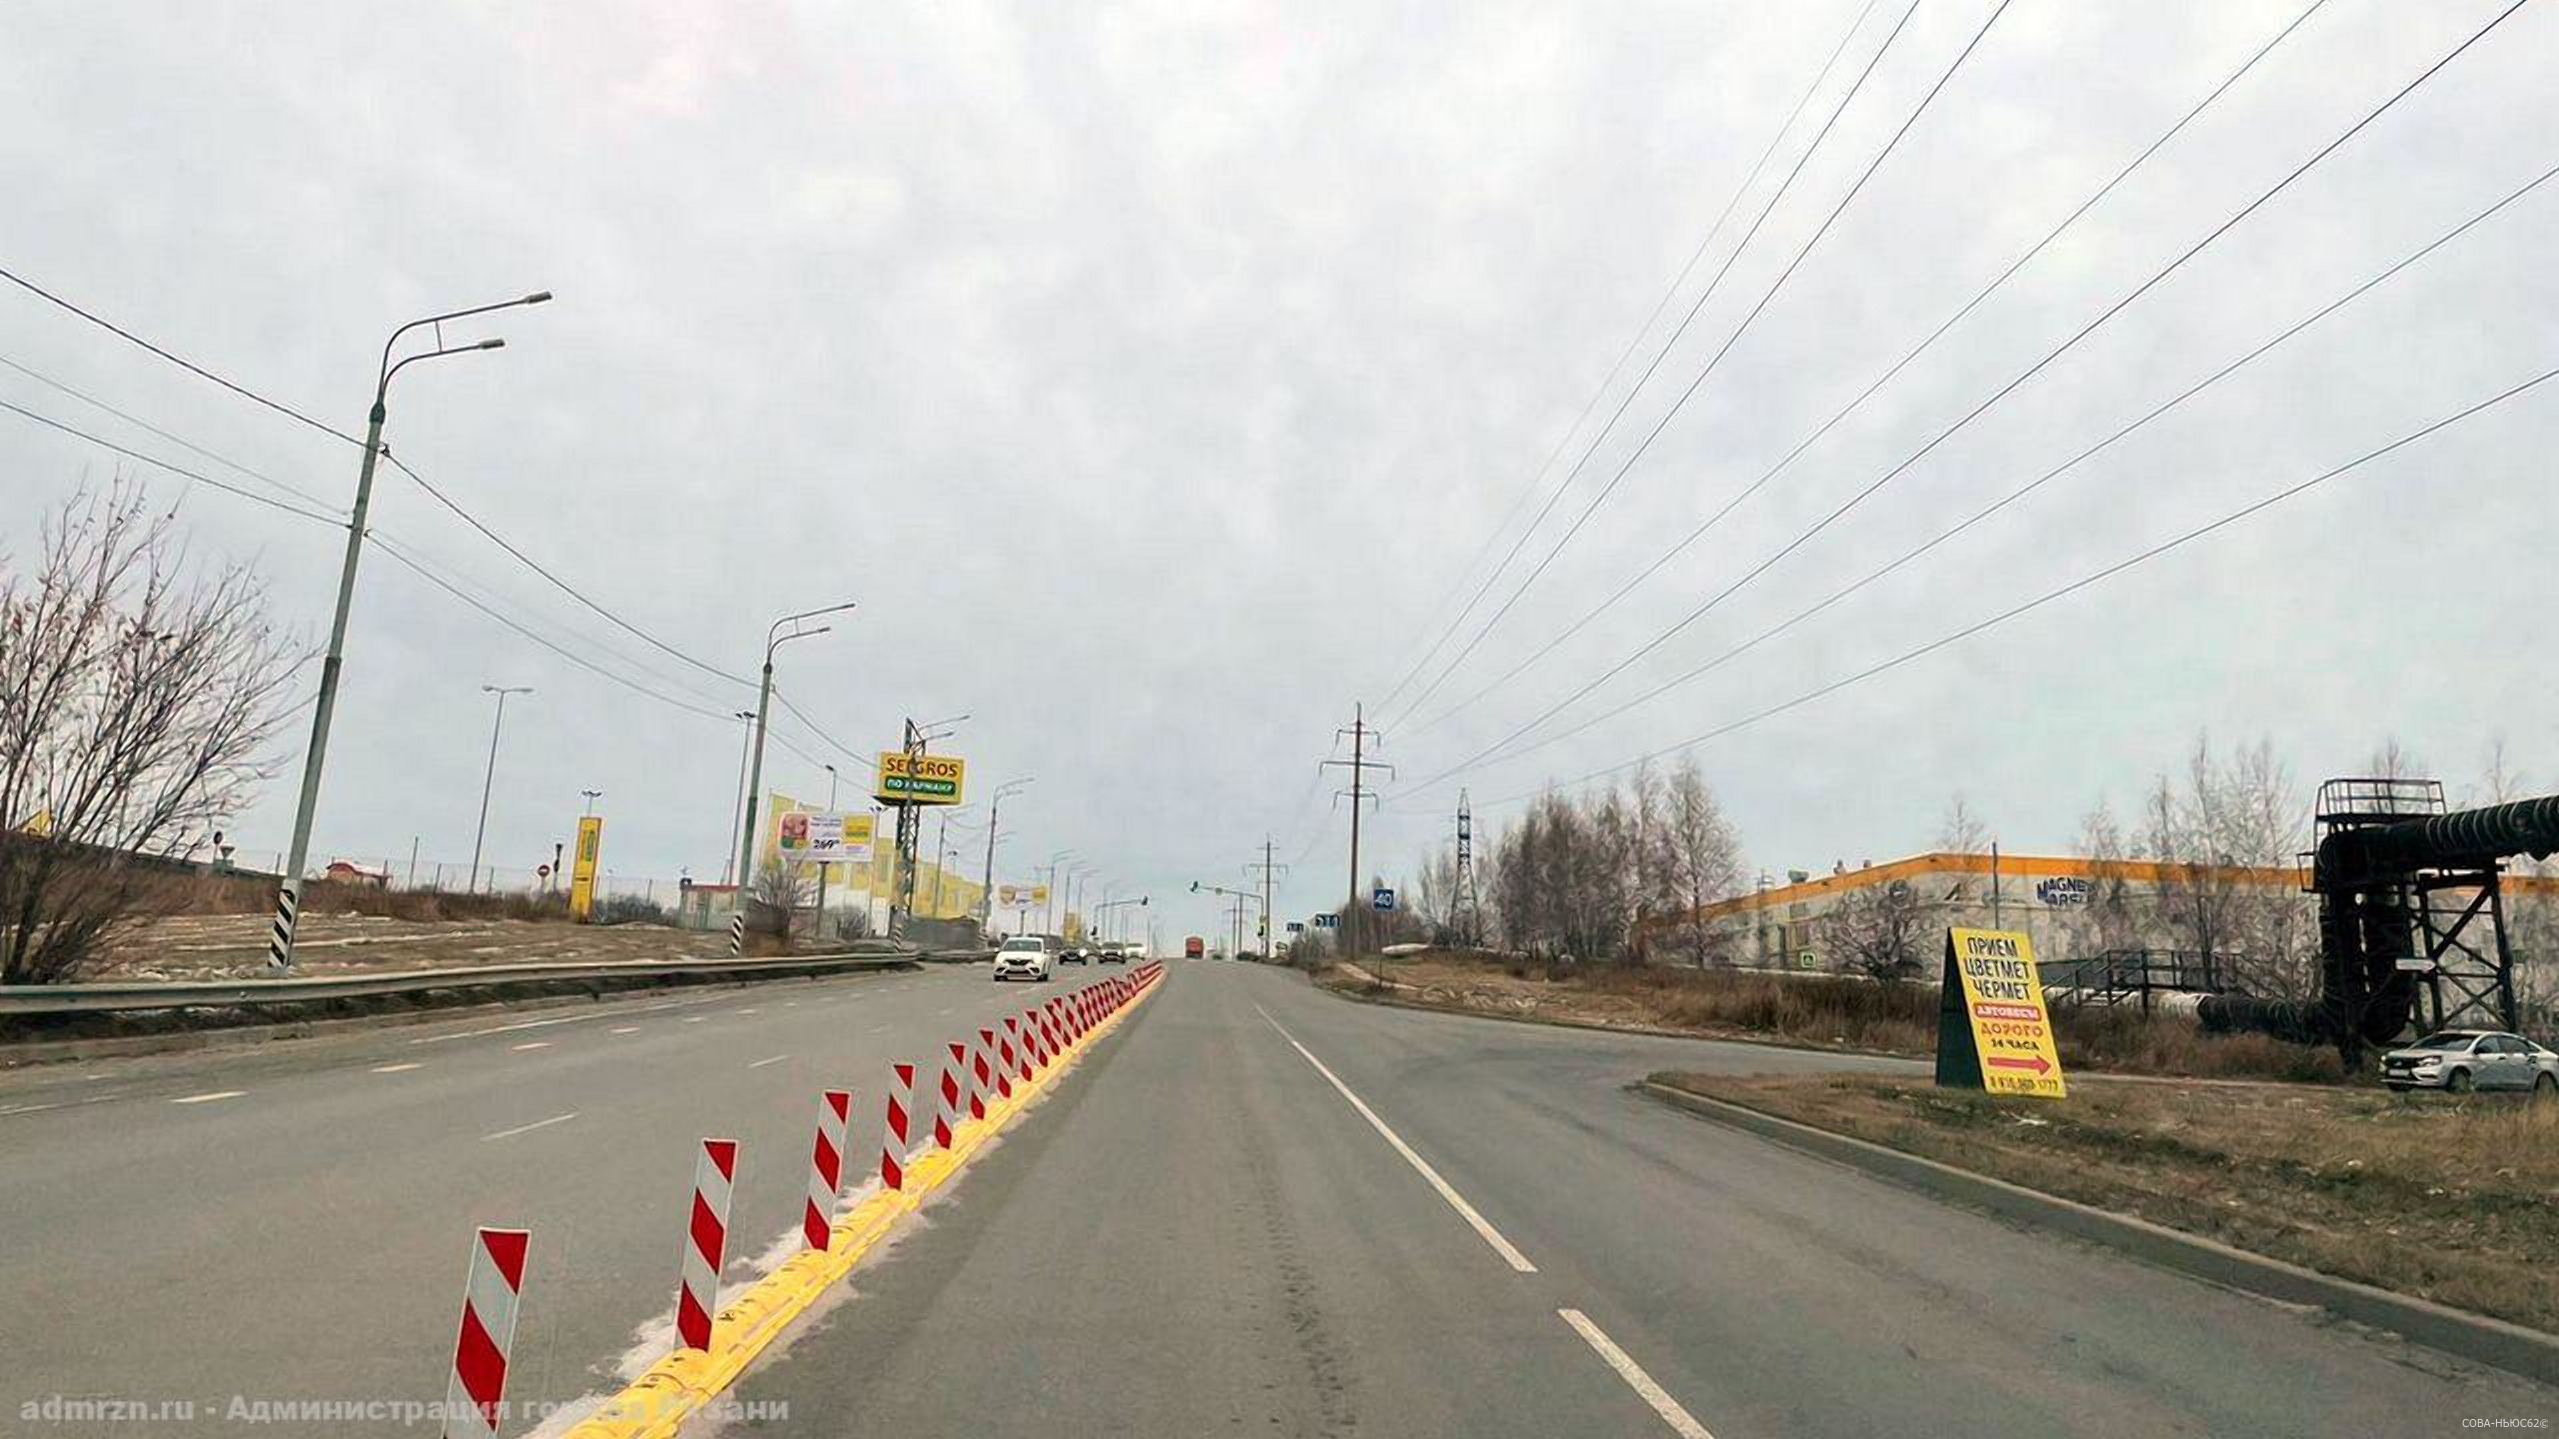 Первые 100 делиниаторов появились в Рязани на Восточной окружной дороге